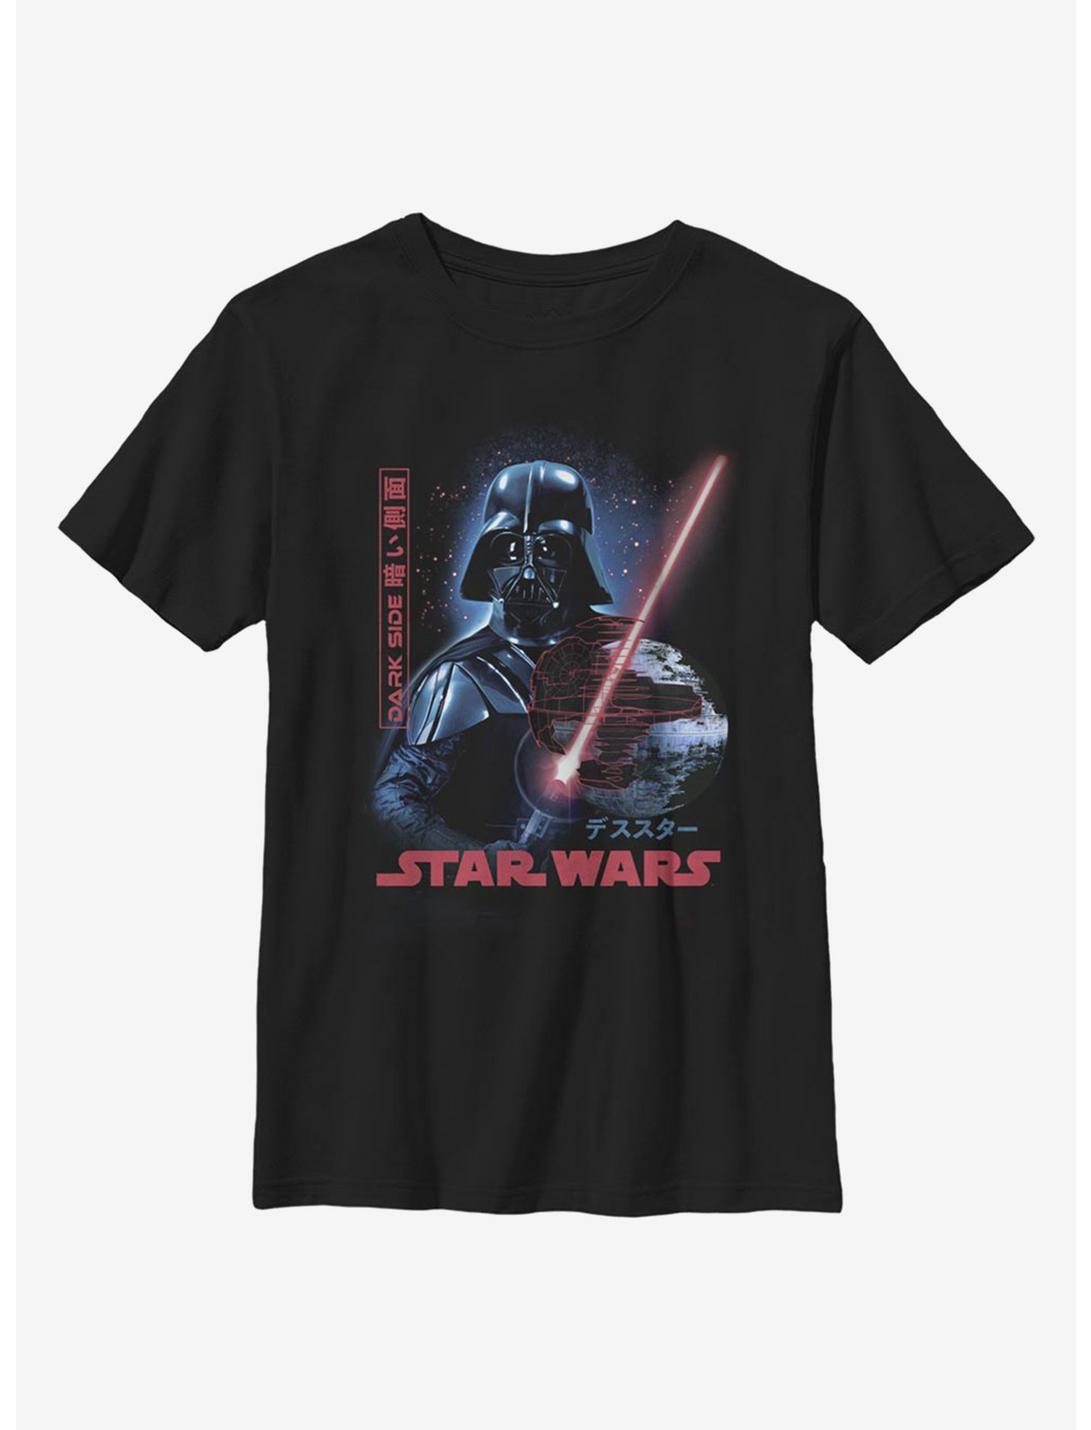 Star Wars Darth Vader Empire Japanese Text Youth T-Shirt, BLACK, hi-res